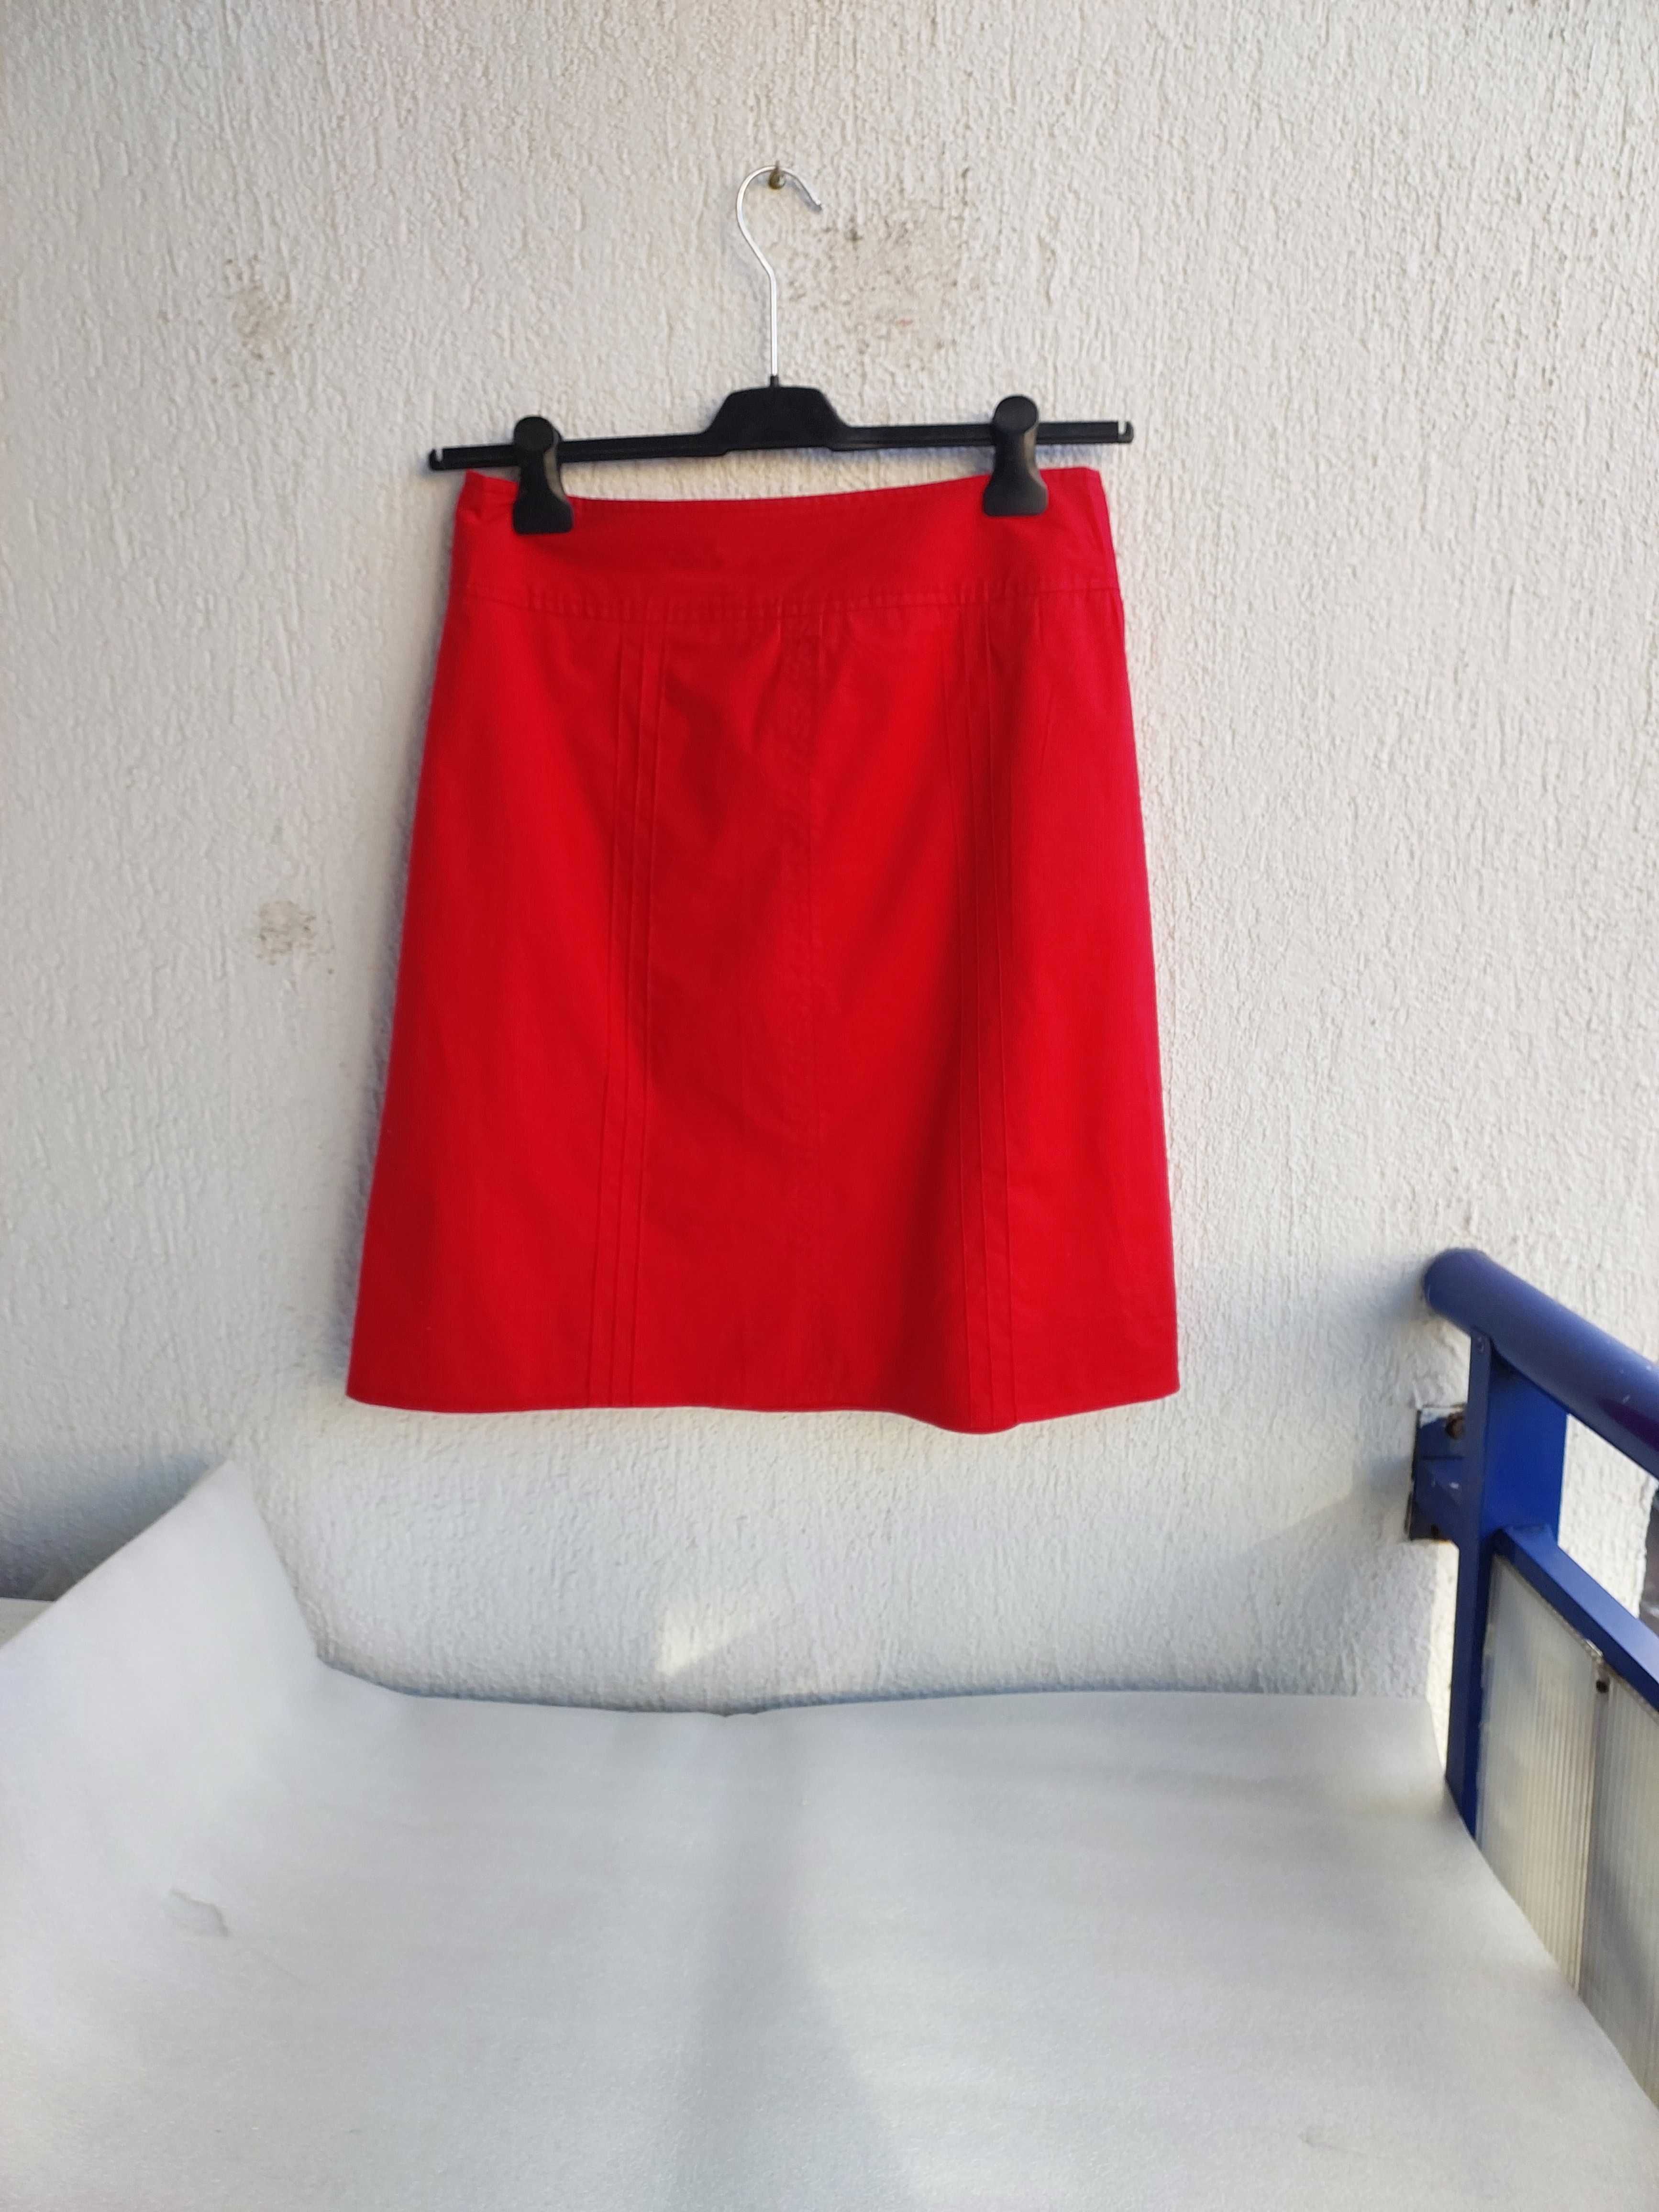 Spódnica  czerwona, trapezowa - New look - M/40-bawełna